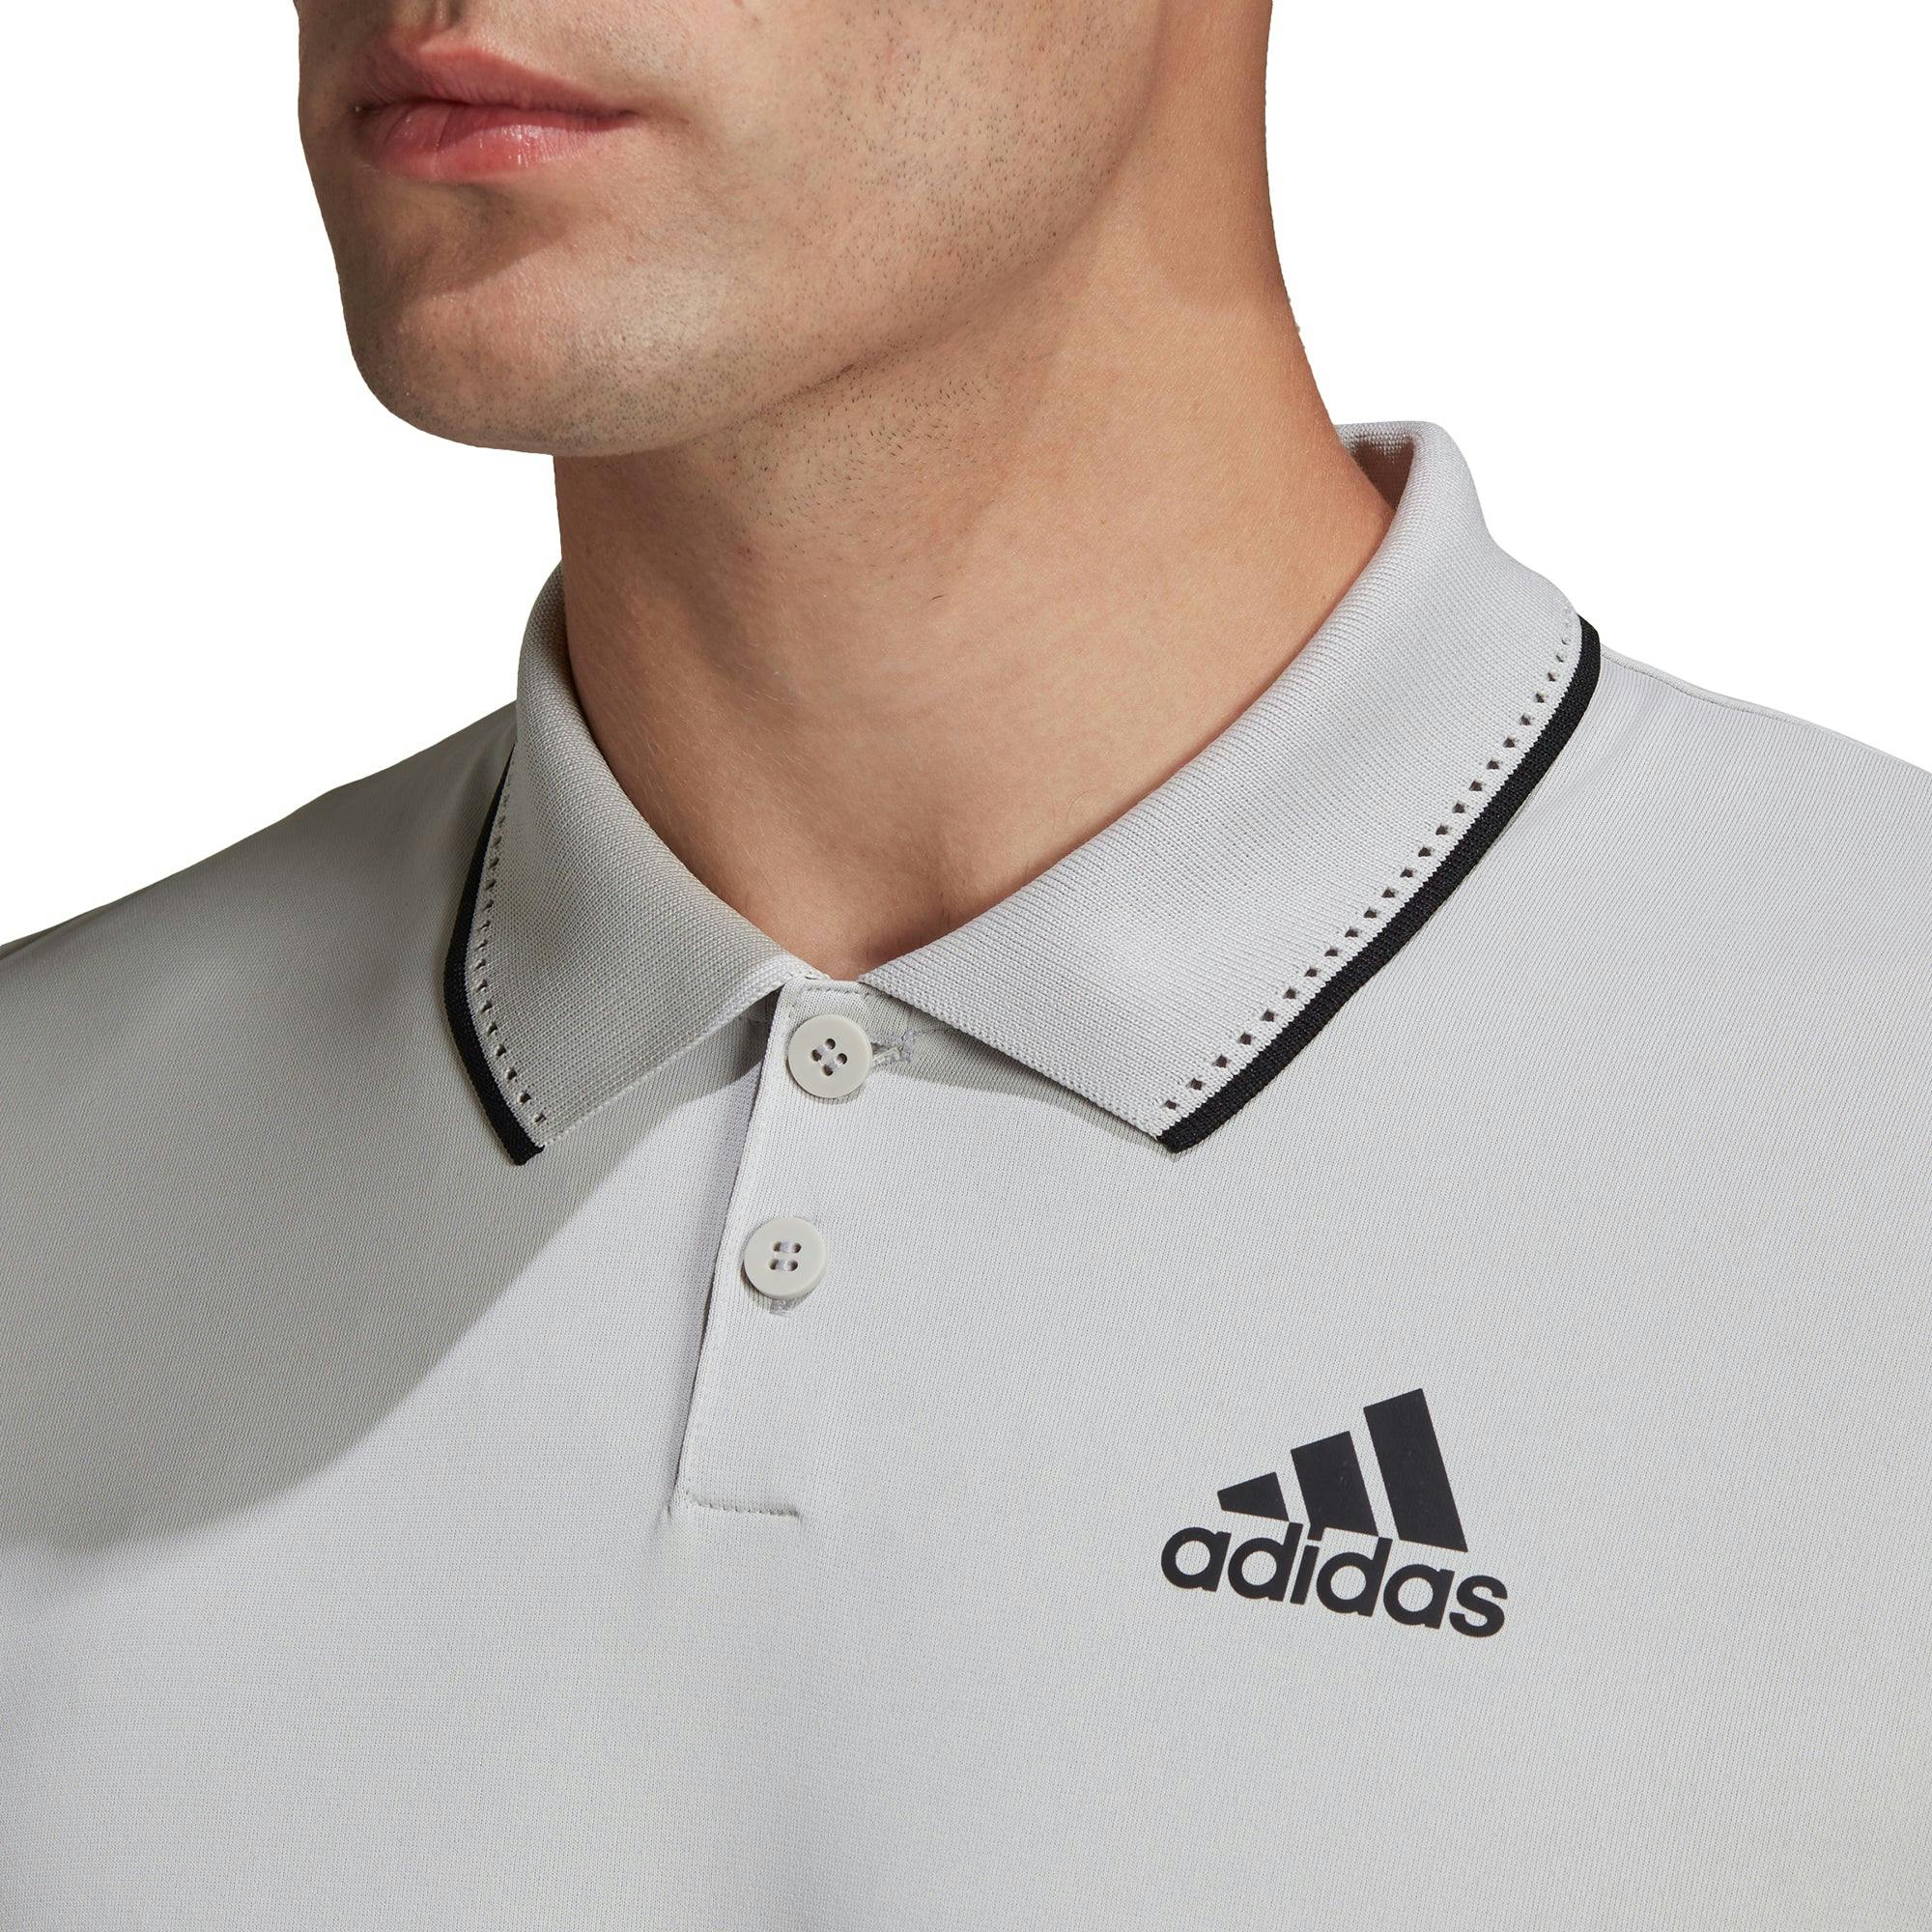 Adidas HEAT.RDY Grey One Mens Tennis Polo - GRY ONE/BLK 056 / XL